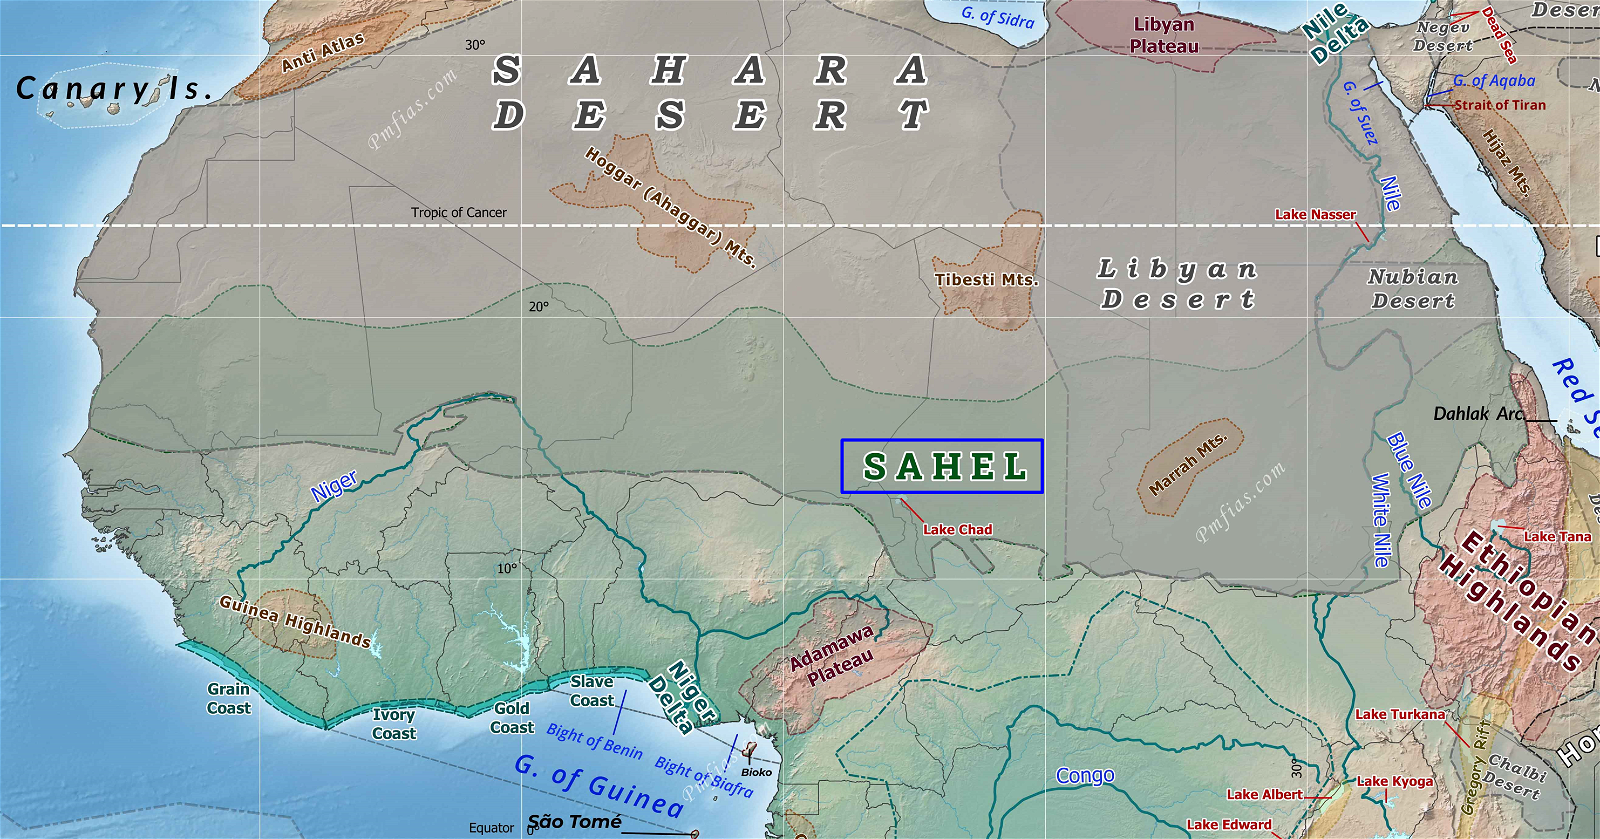 Physiography of SAHARA, SAHEL, Libyan Desert 